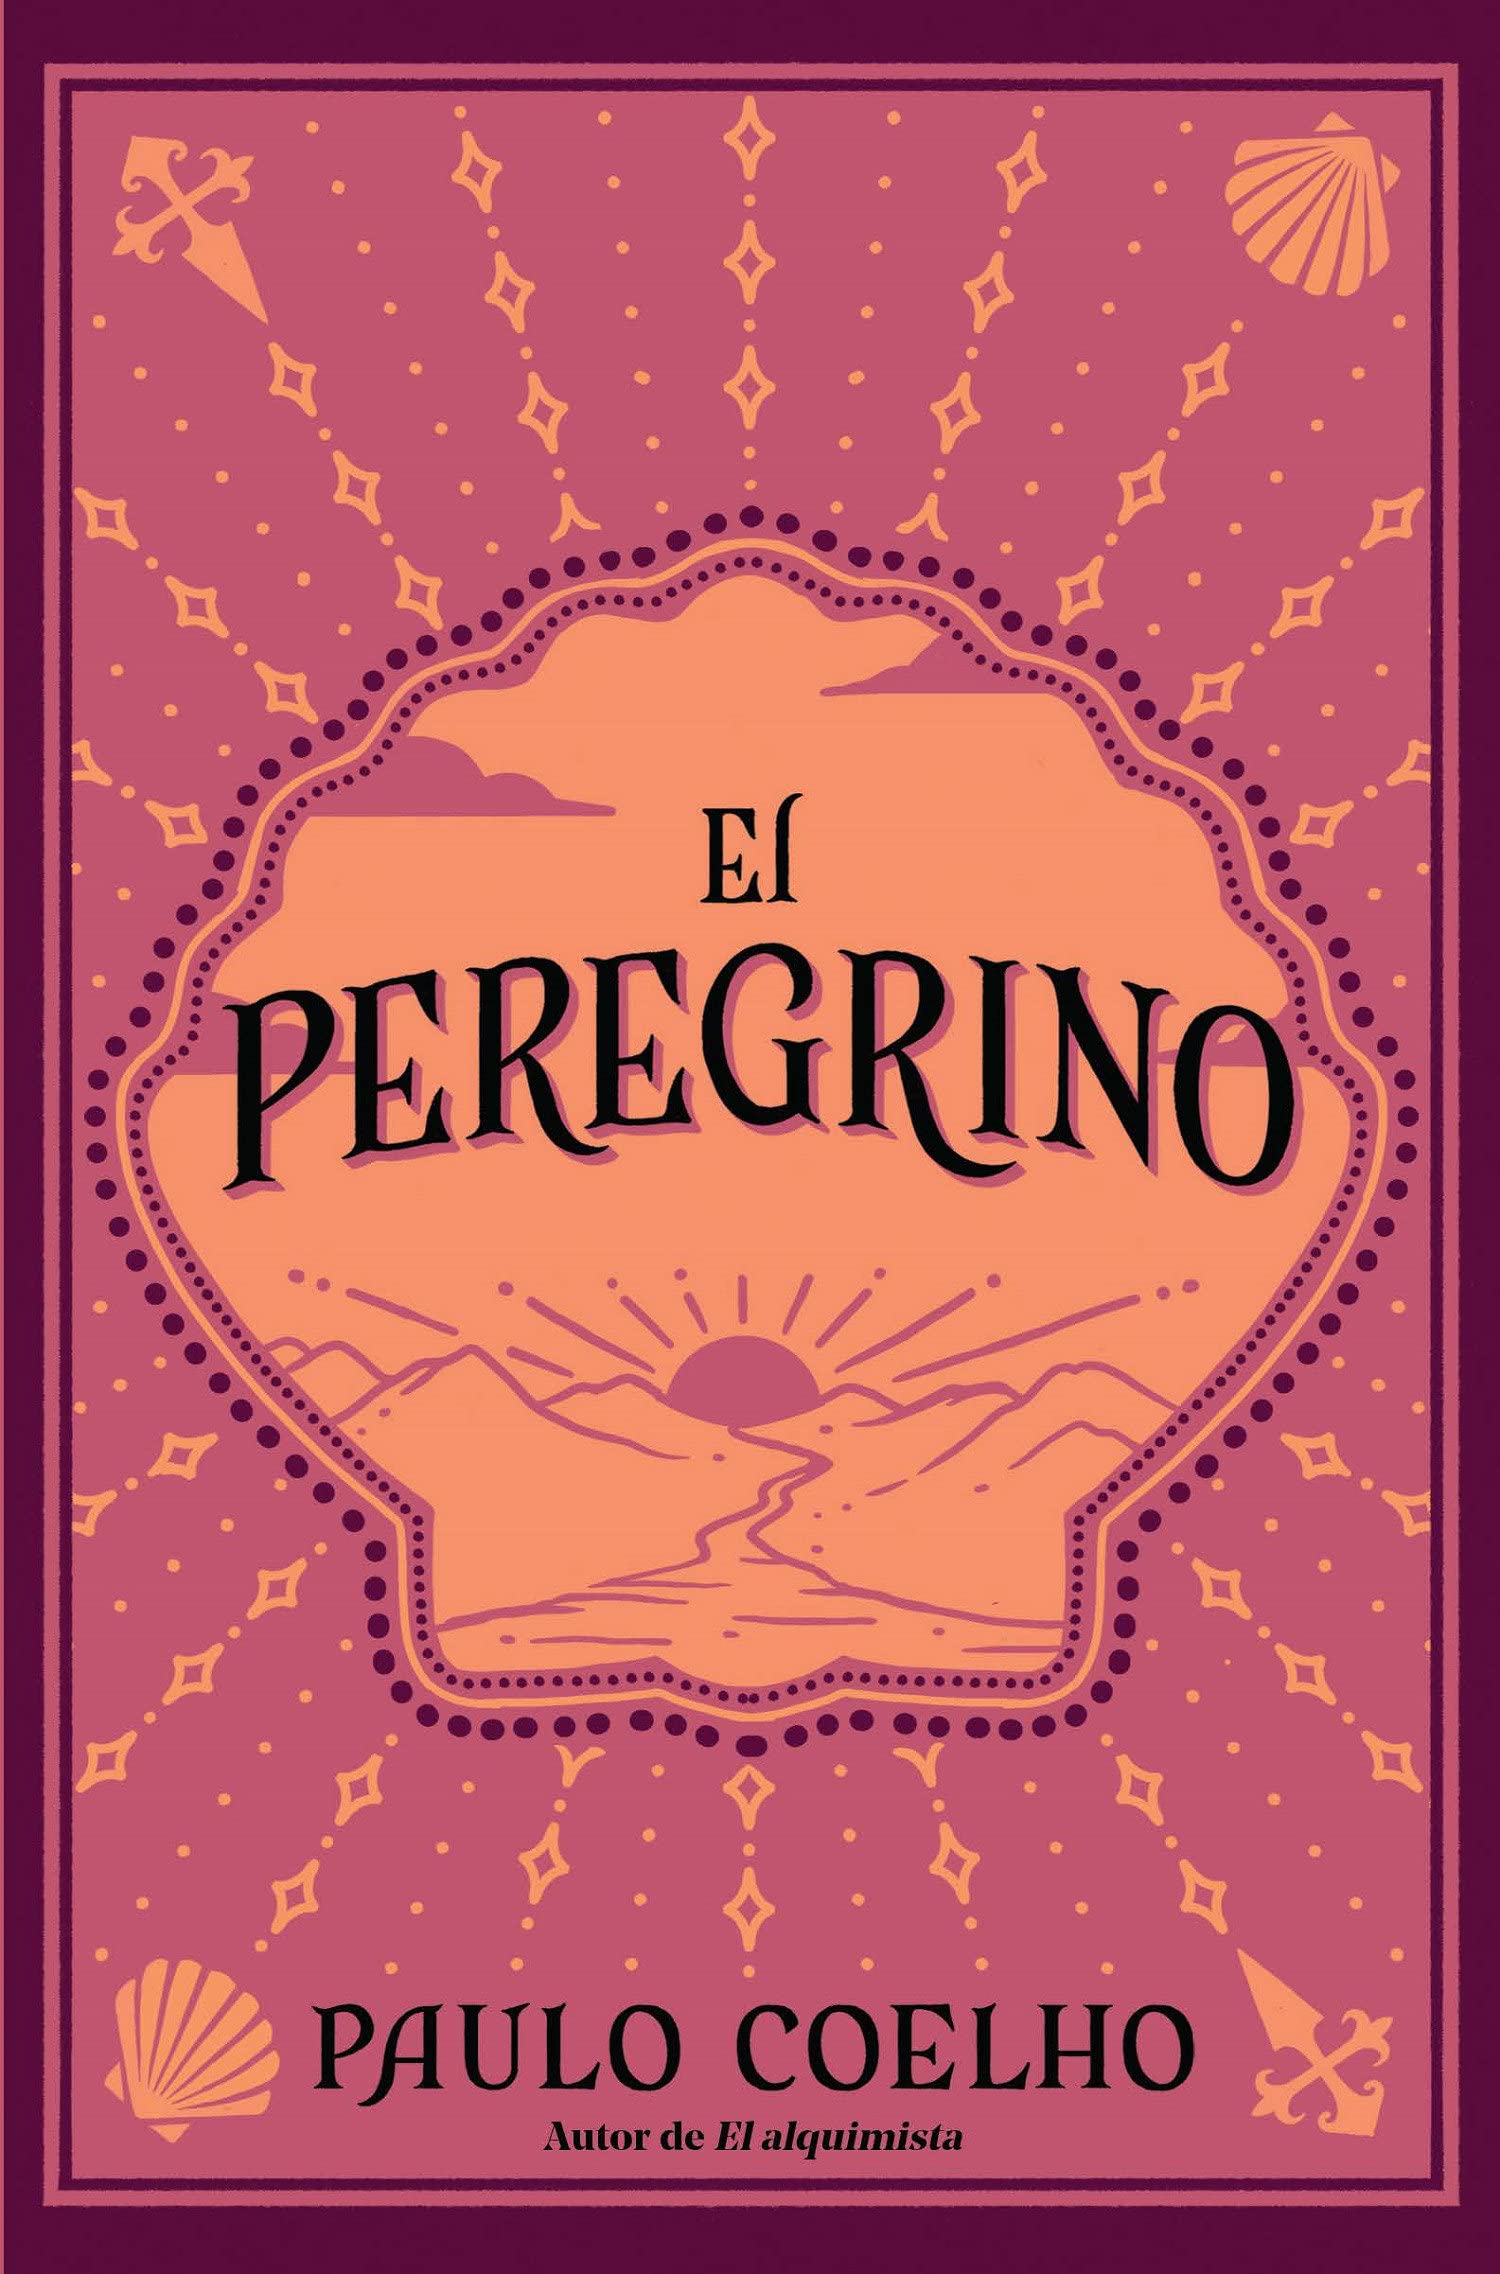 El peregrino (Edición conmemorativa 35 aniversario) / The Pilgrimage 35th Anniv ersary Commemorative Edition (Spanish Edition) Paperback